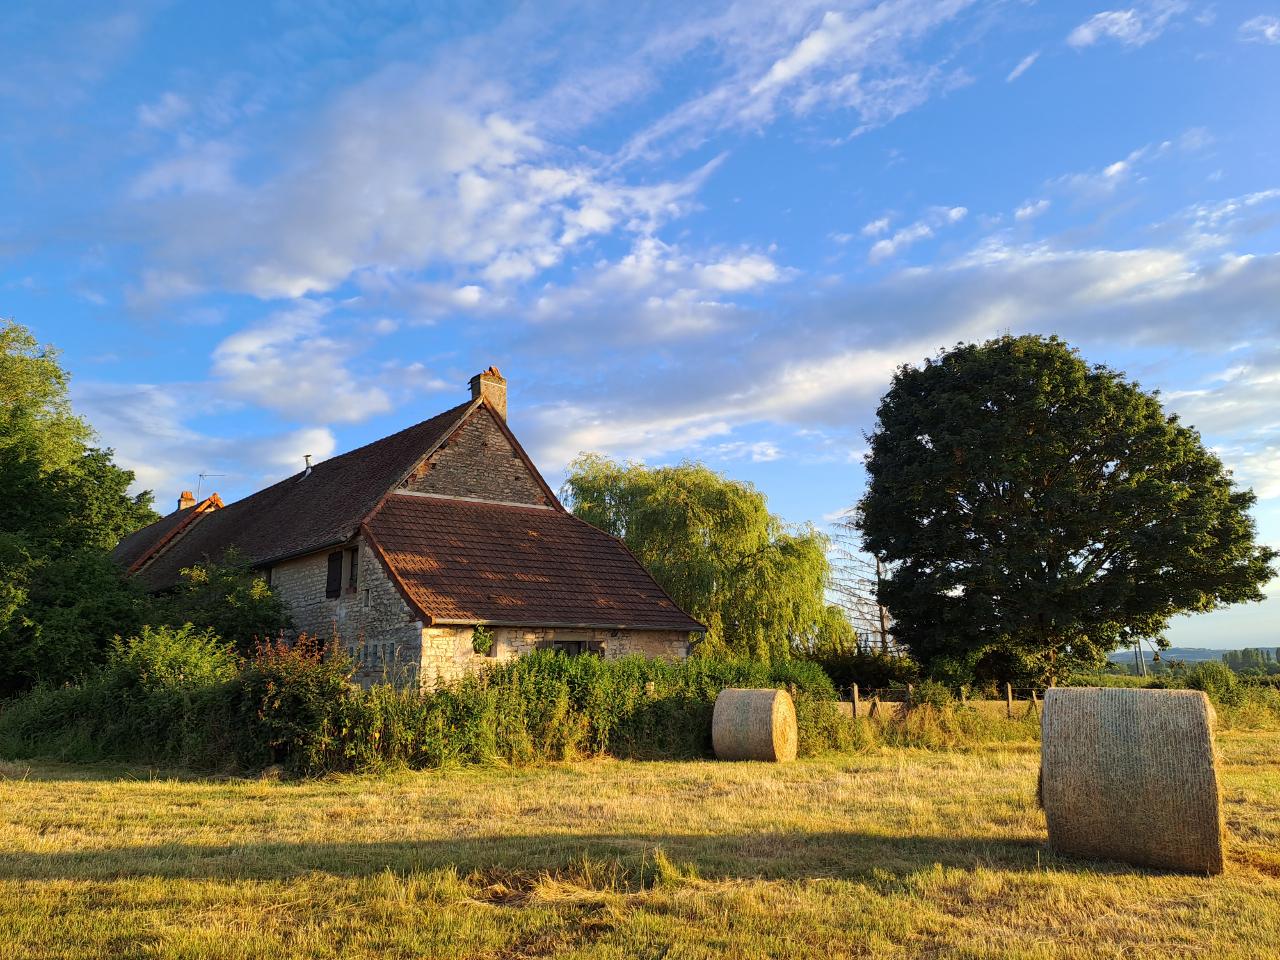 Hôte GreenGo: Gîte de campagne "La Chavoche" situé en lisière de bois et à proximité d’une rivière - Bourgogne - Image 5